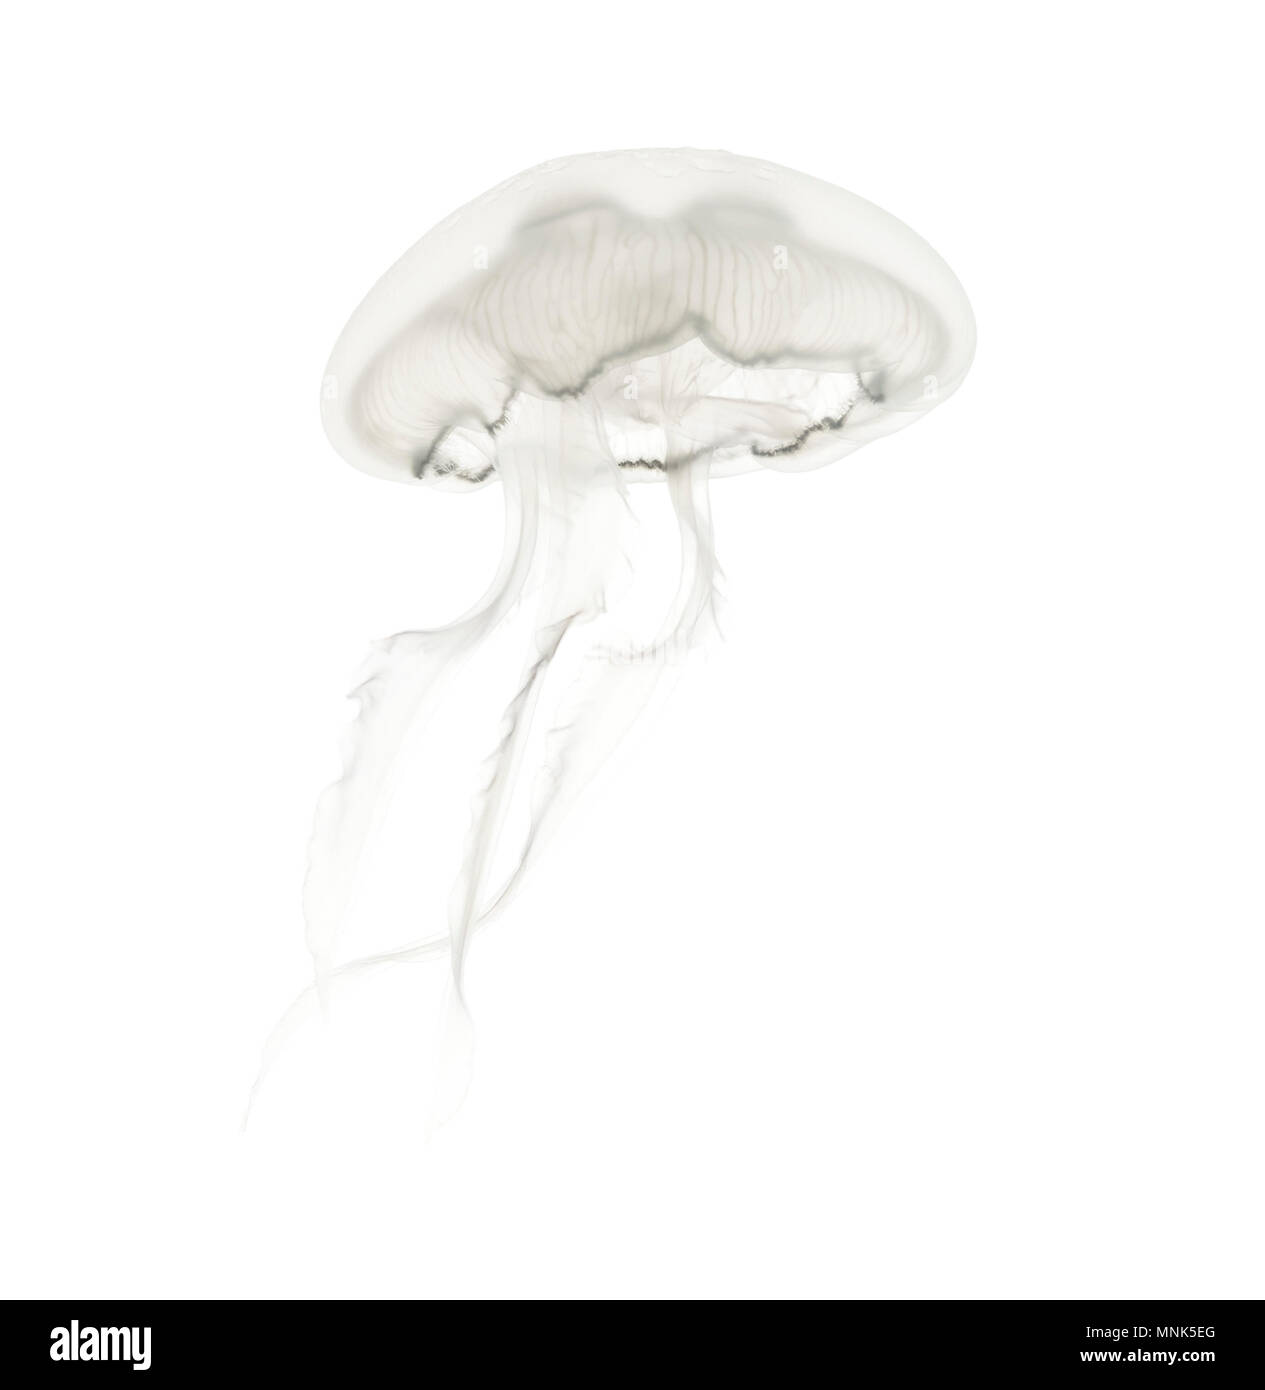 Aurelia aurita anche chiamato Medusa comune contro uno sfondo bianco Foto Stock